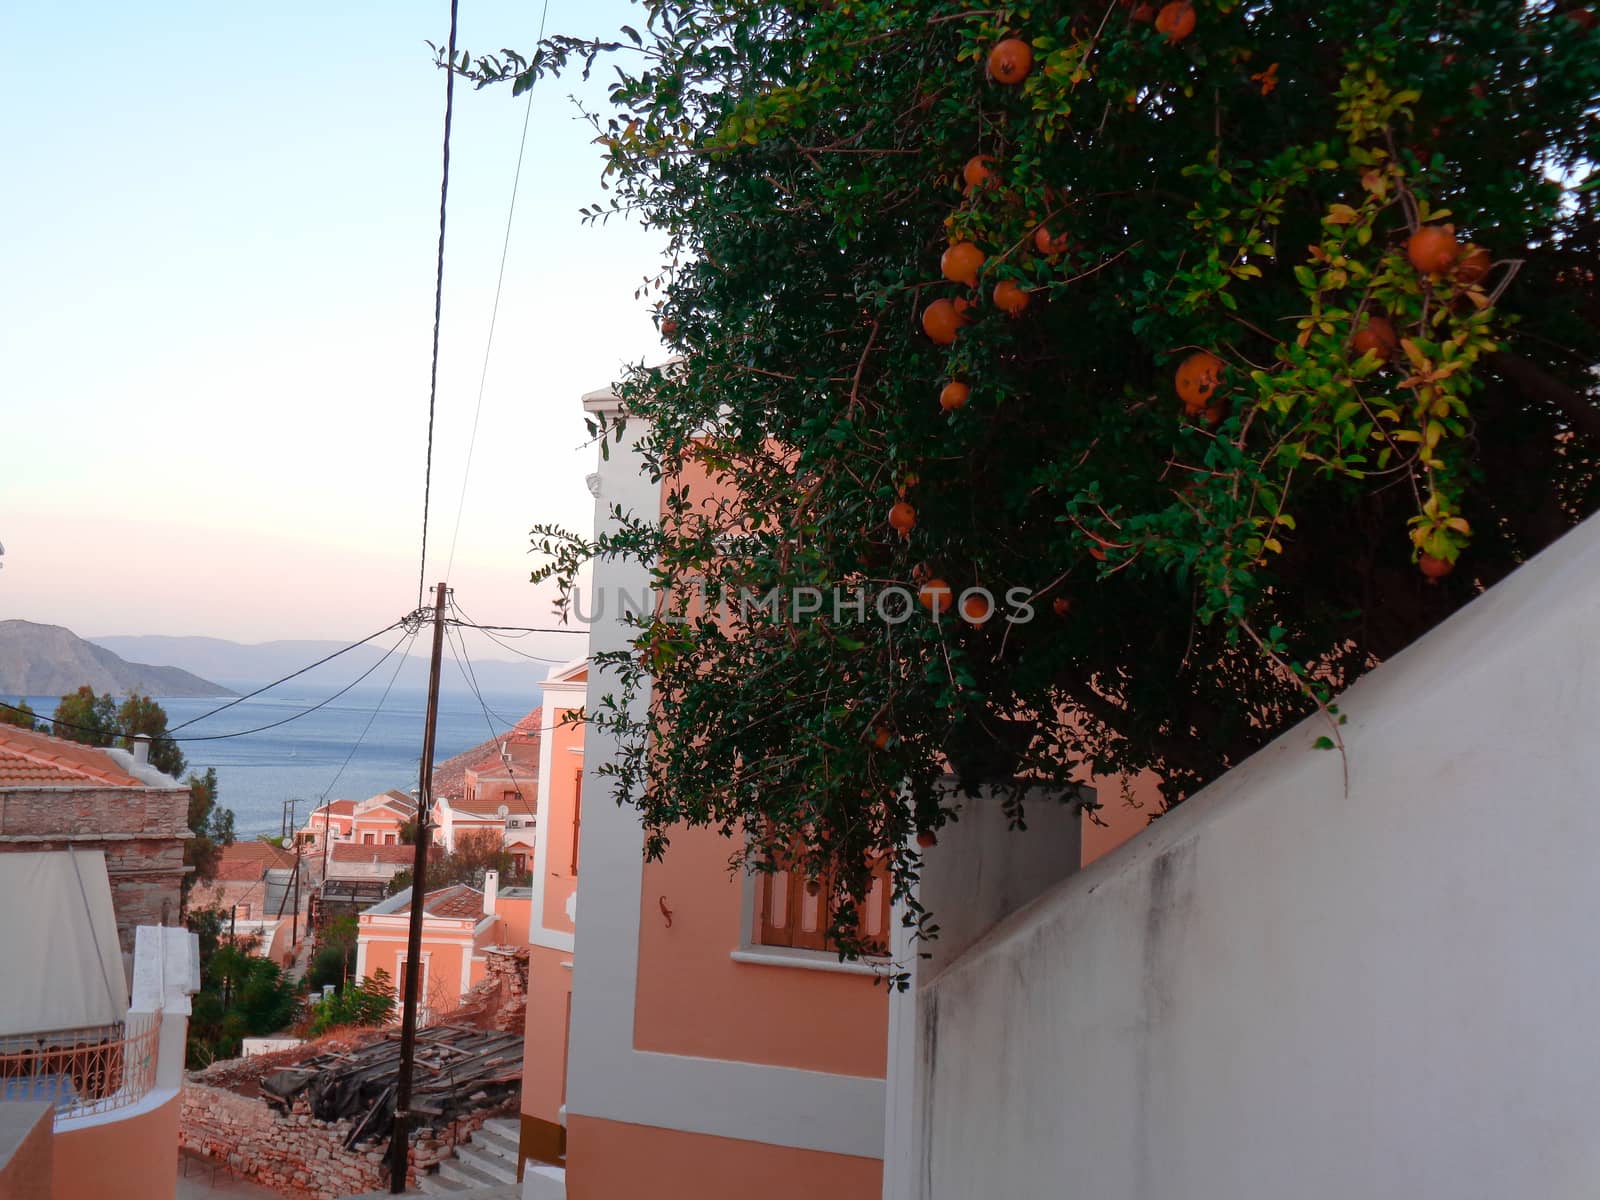 orange tree in greece by Tevion25